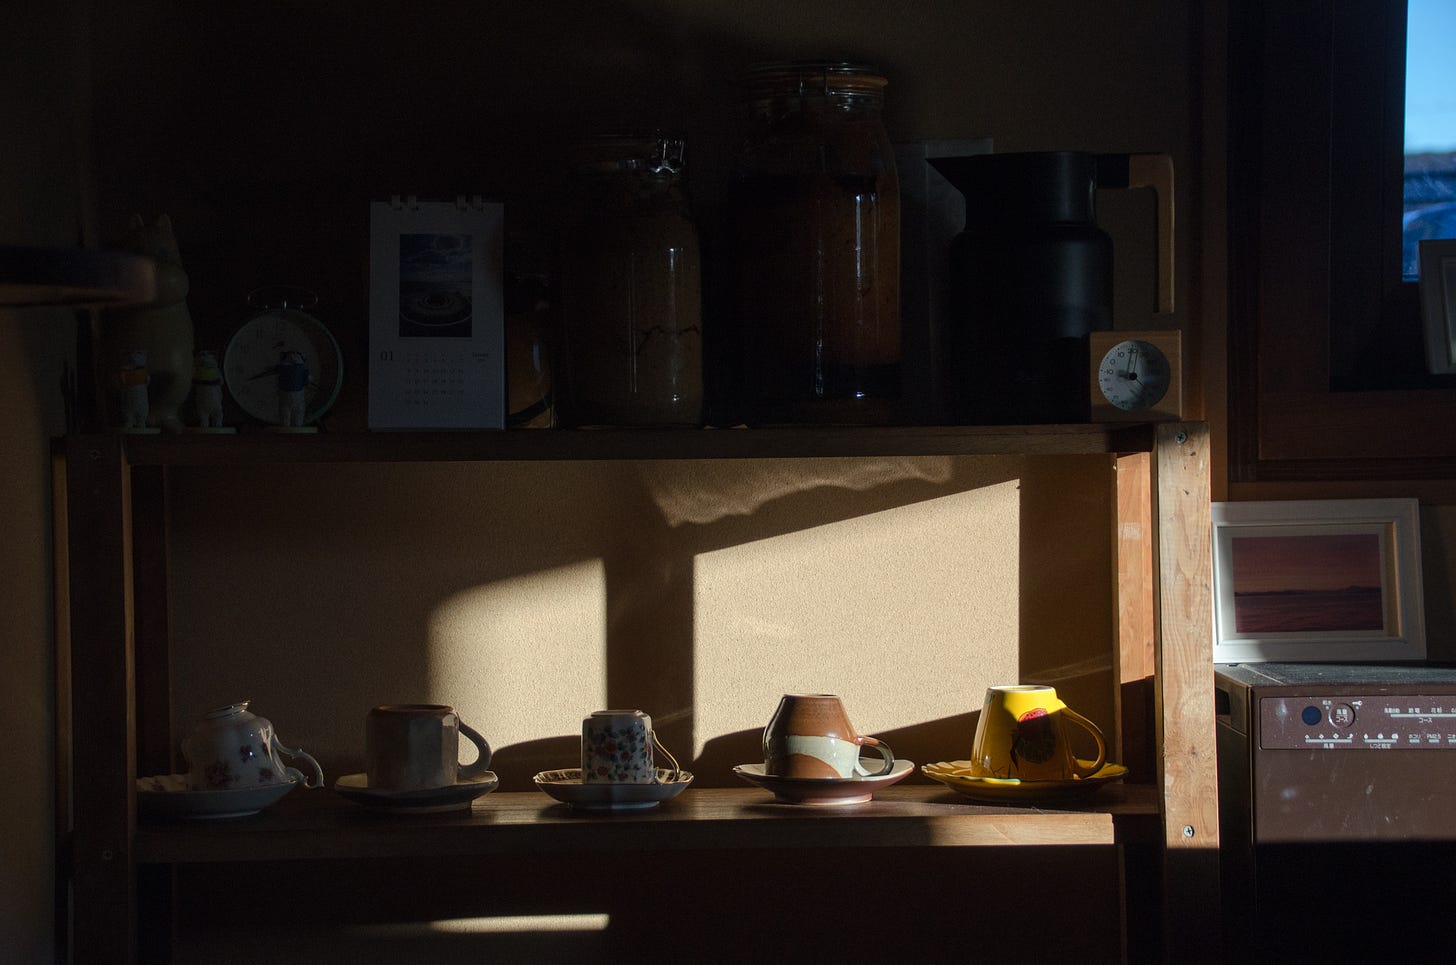 Morning sun against a shelf of mugs, casting a warm shadow